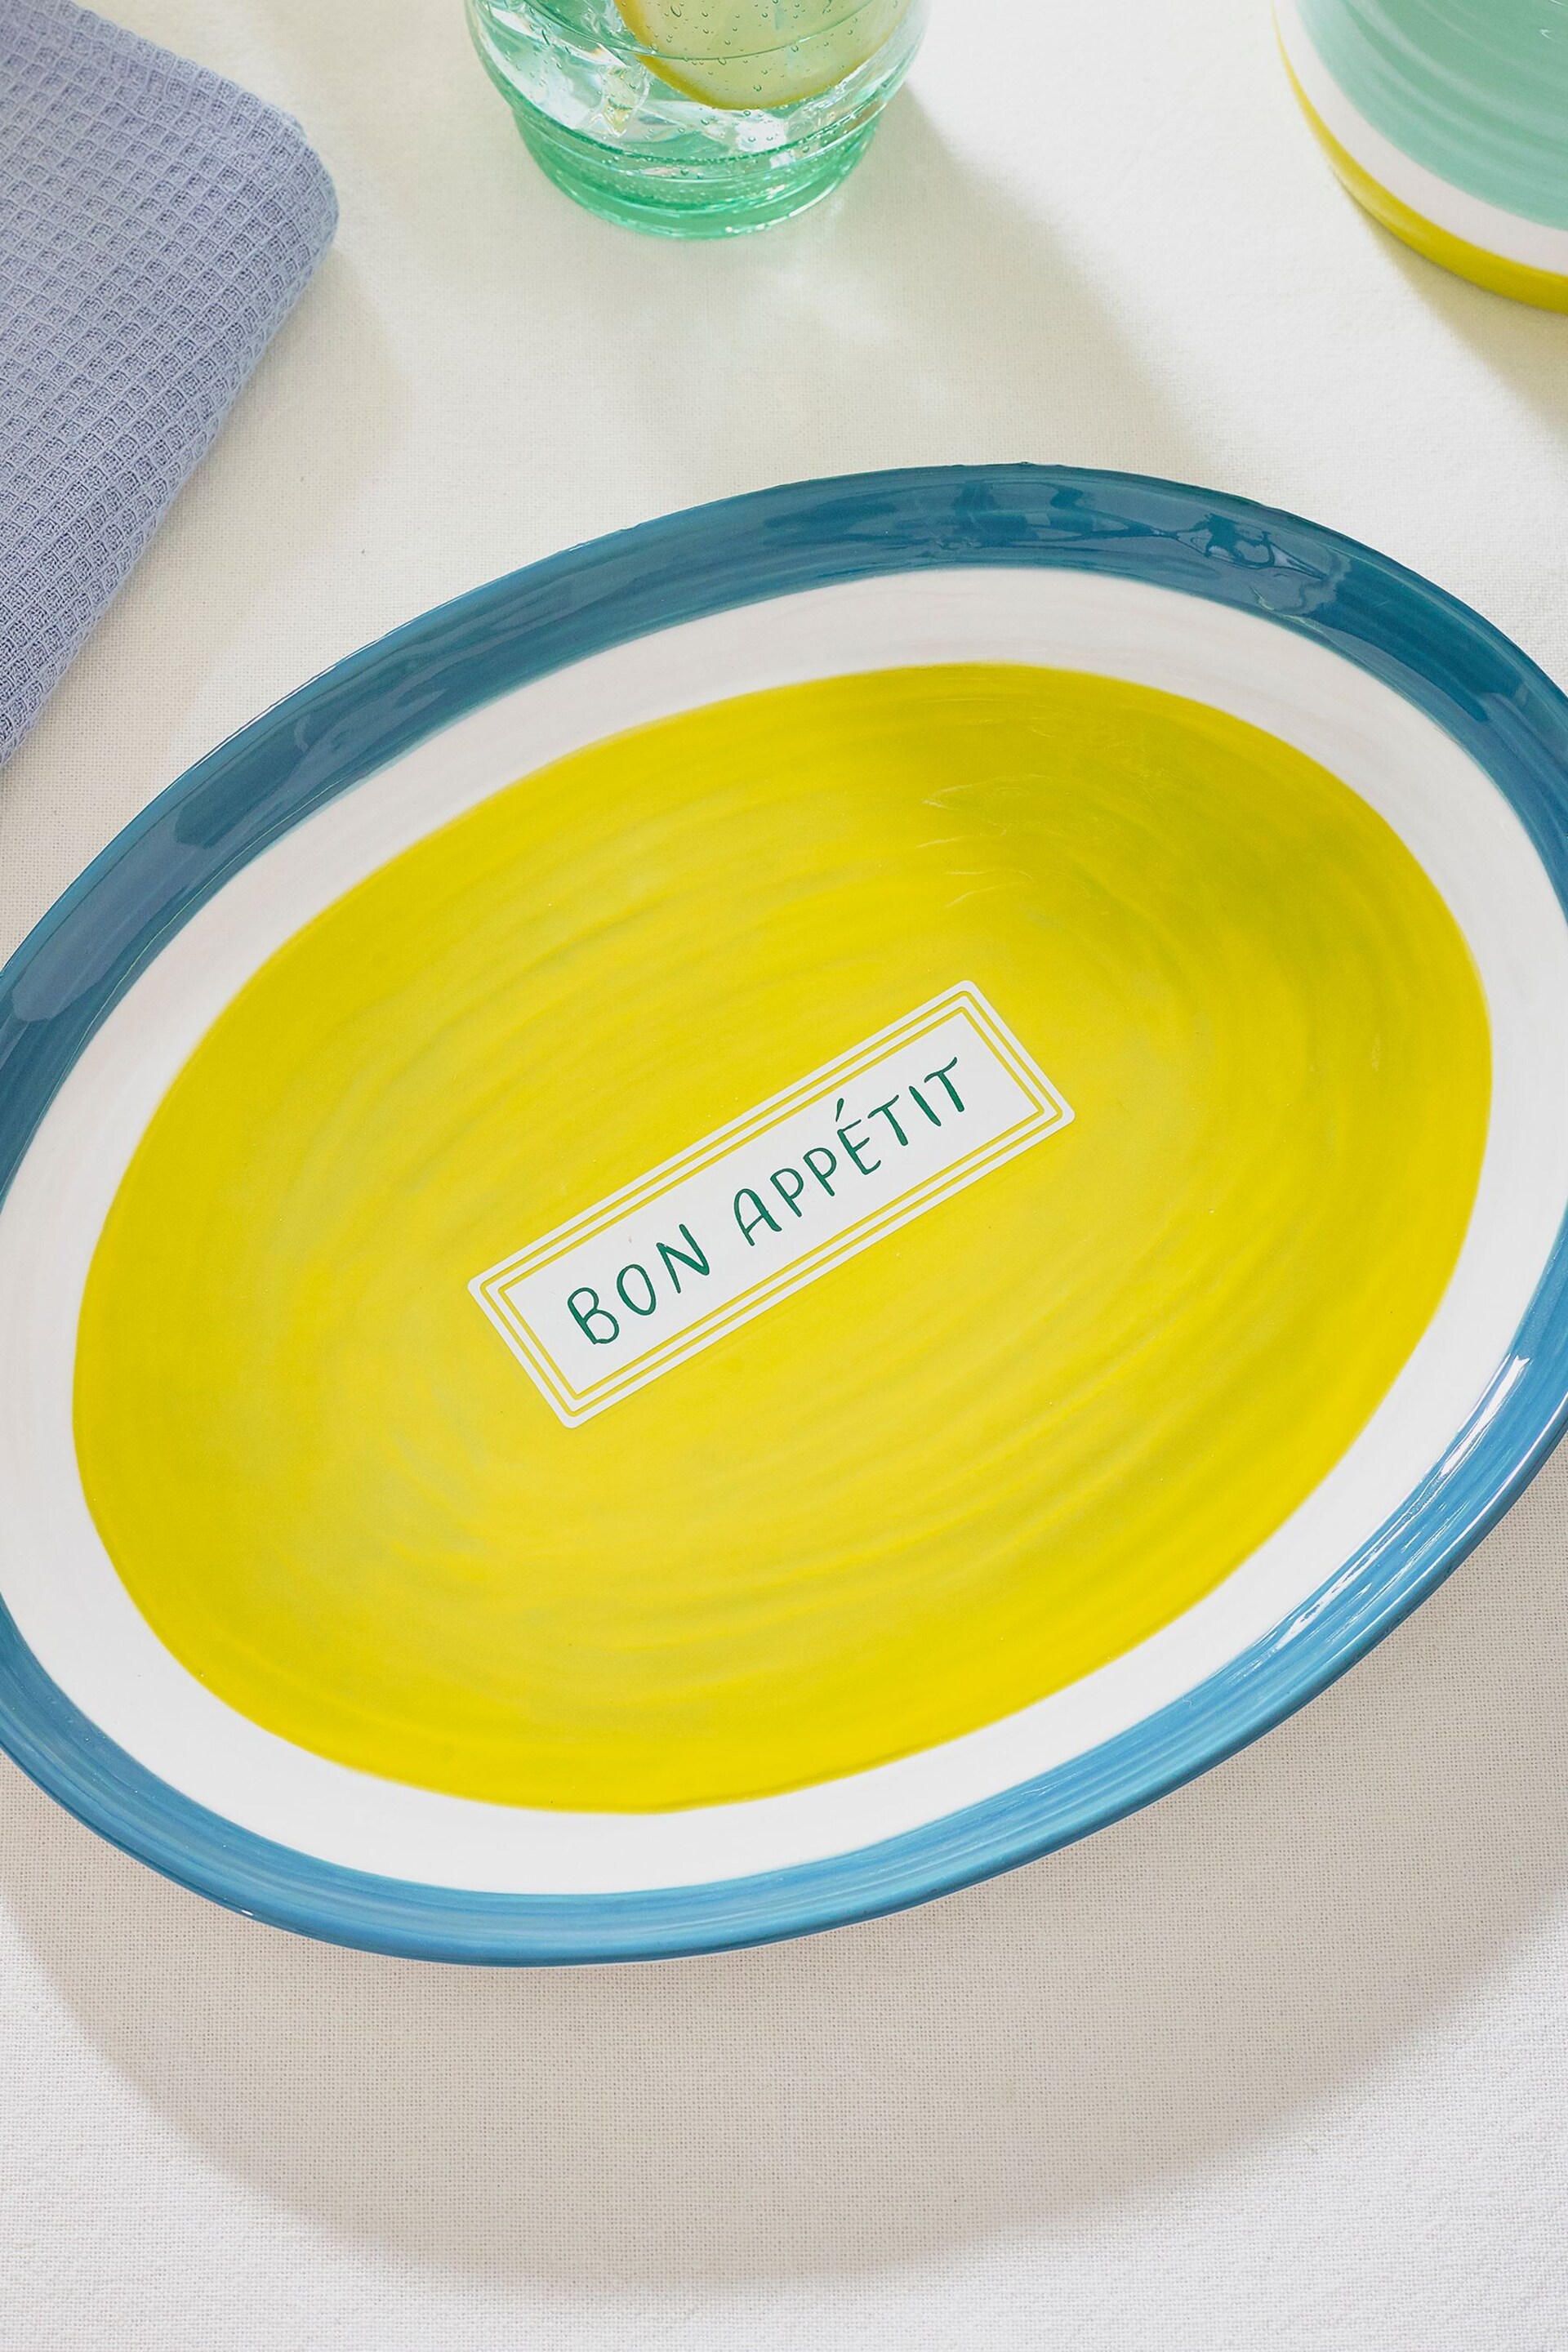 Teal Blue Bon Appétit Platter - Image 2 of 4